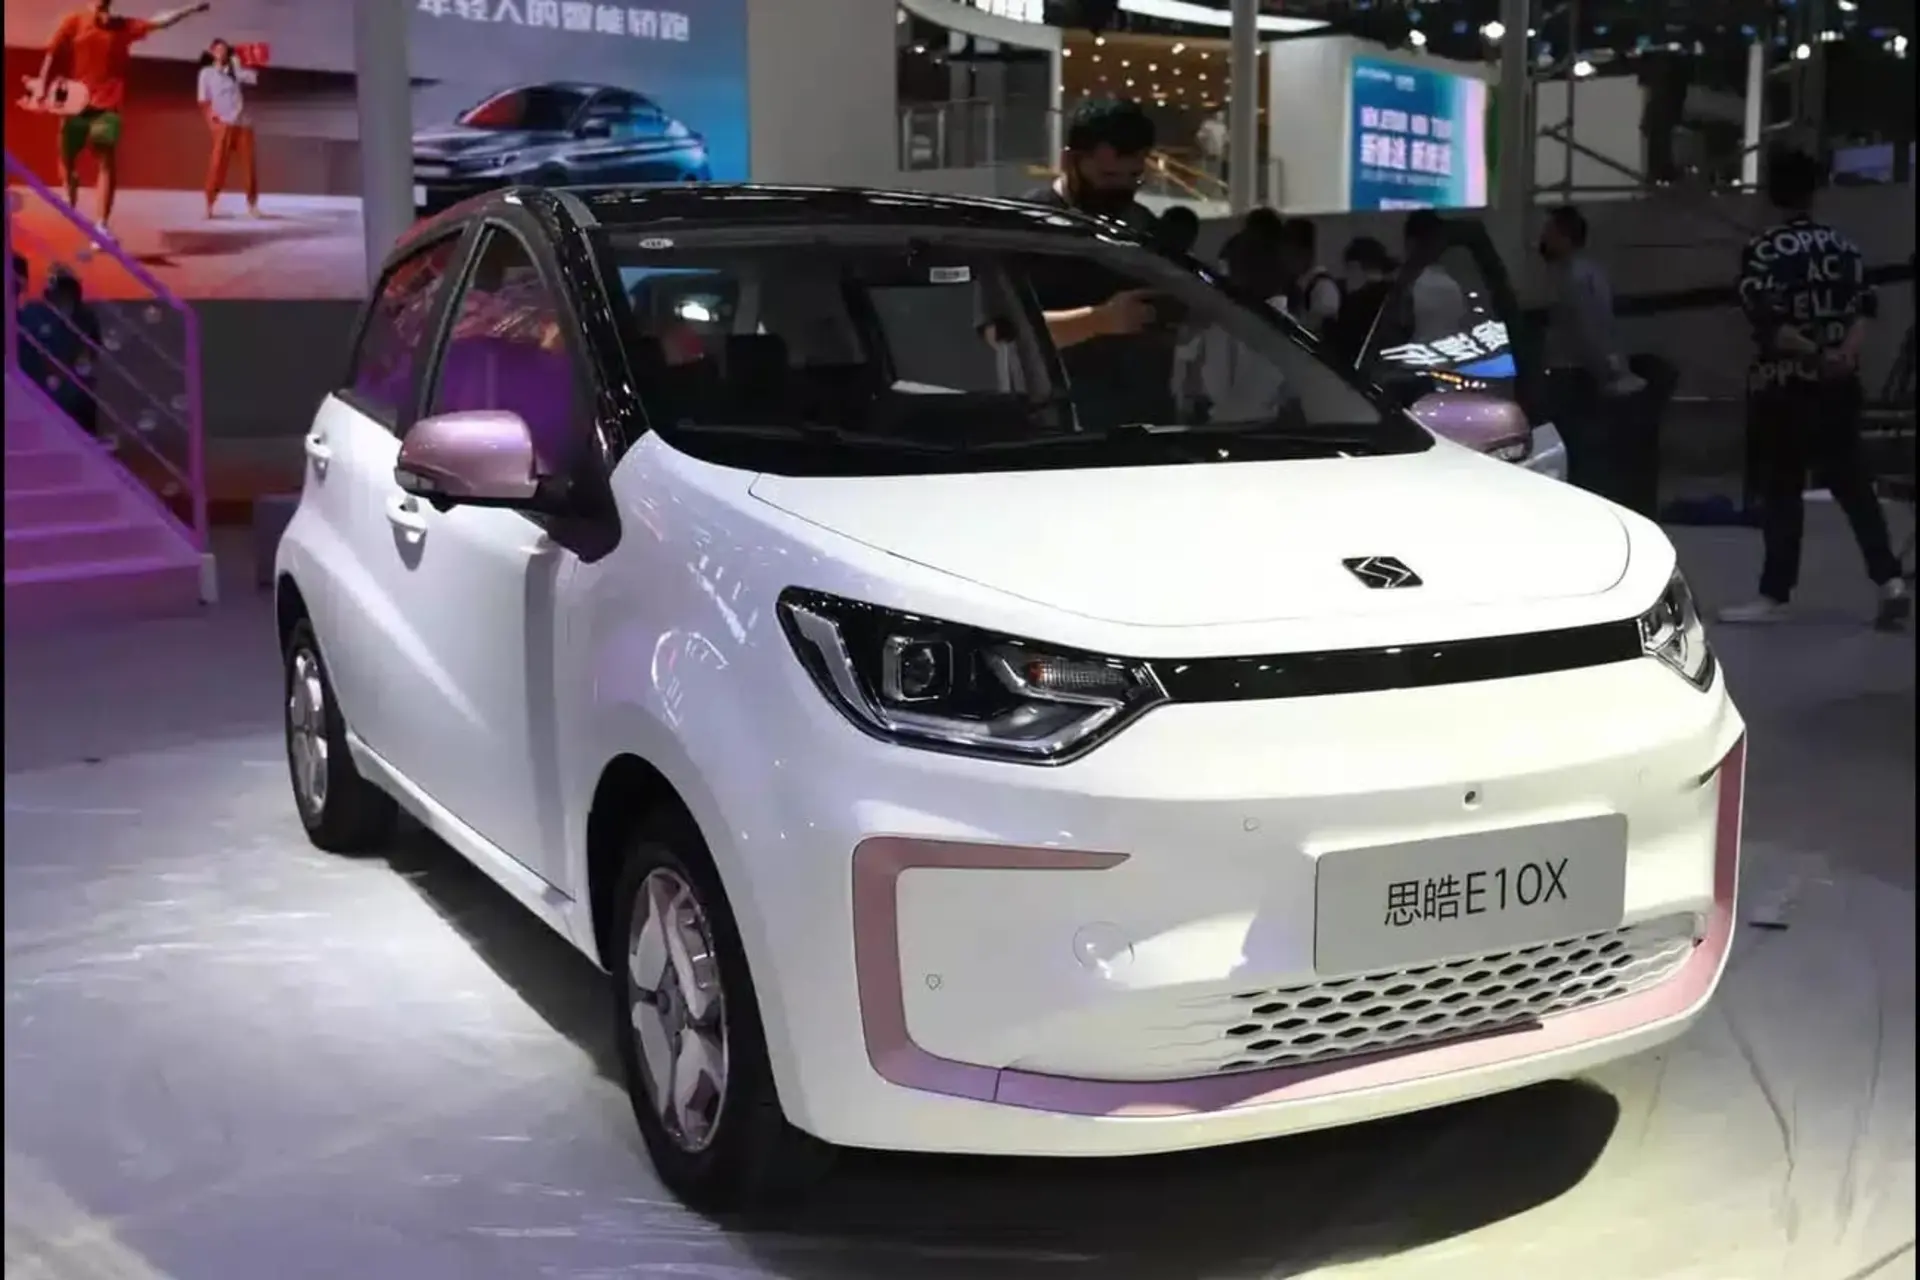 مرجع متخصصين ايران نمايي از روبروي خودروي yiwei e10x به رنگ سفيد كه اولين خودروي الكتريكي مجهز به باتري هاي سديم - يوني است